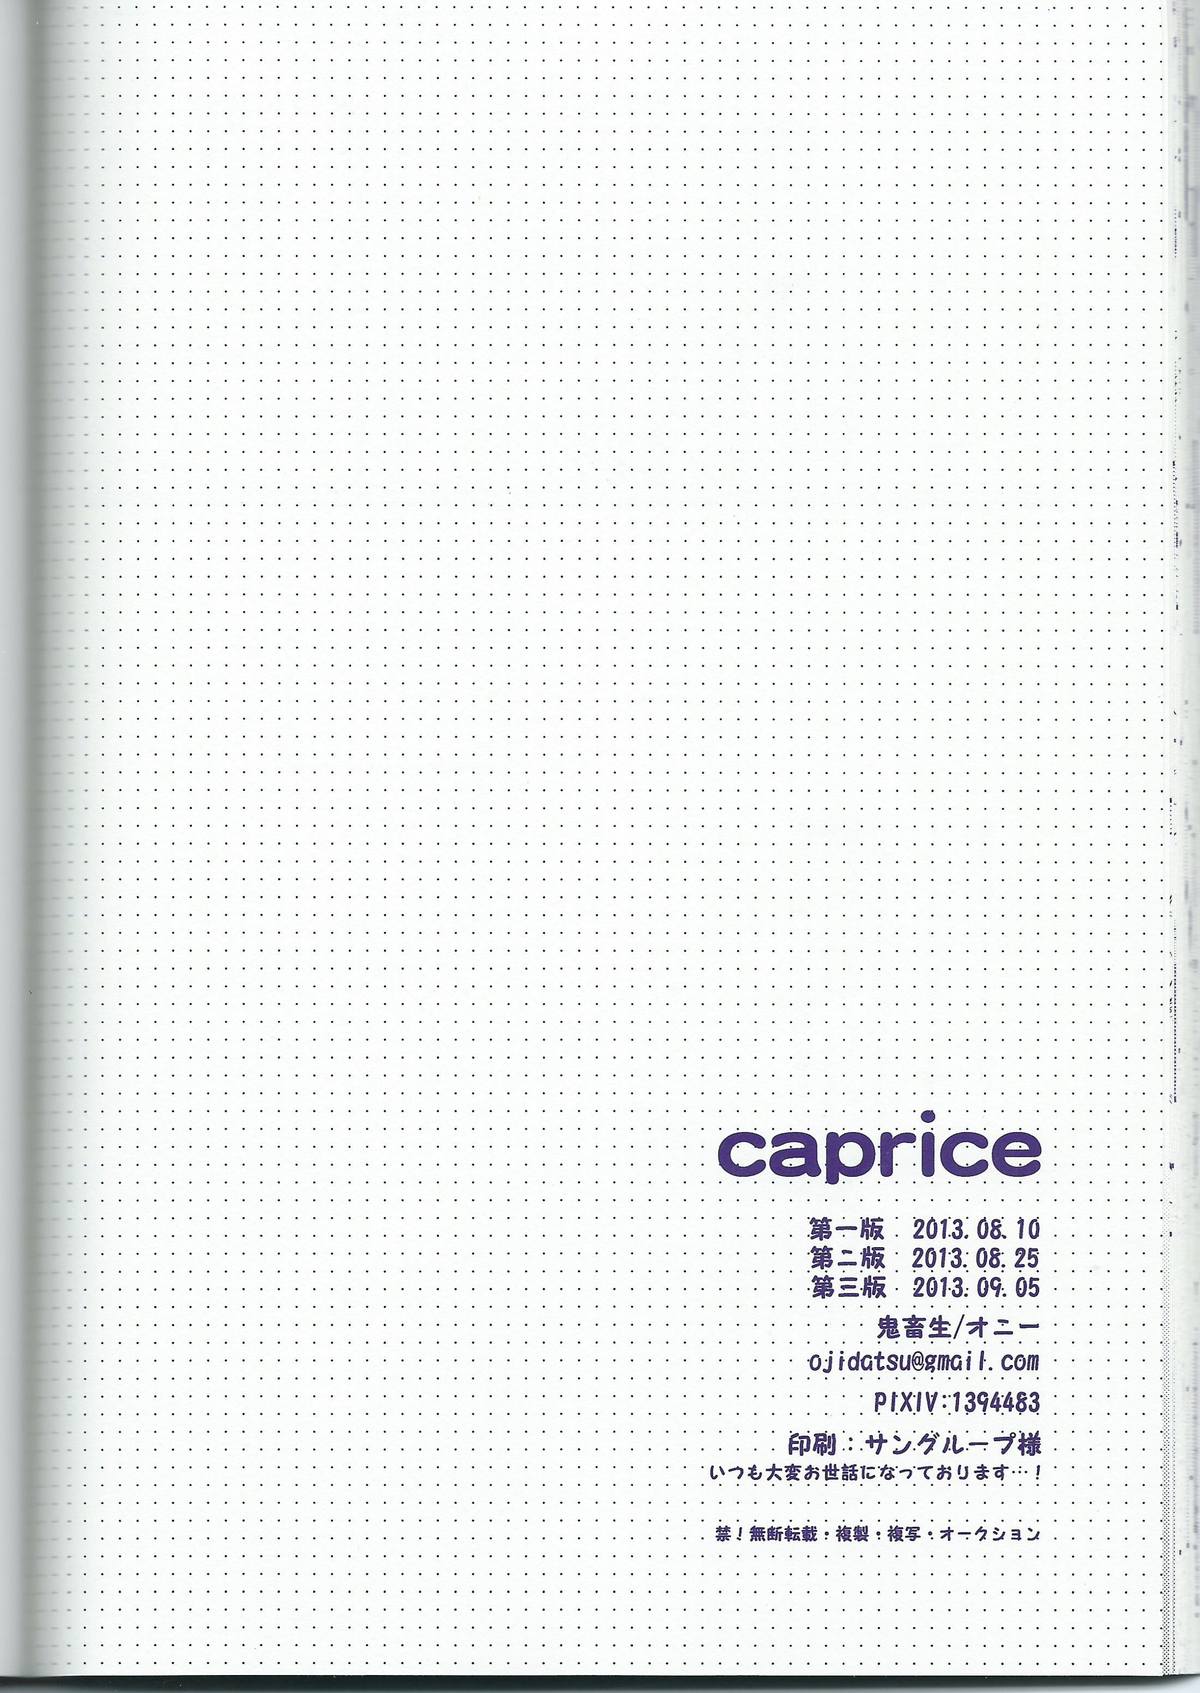 [鬼畜生 (オニー)] caprice (Free!)